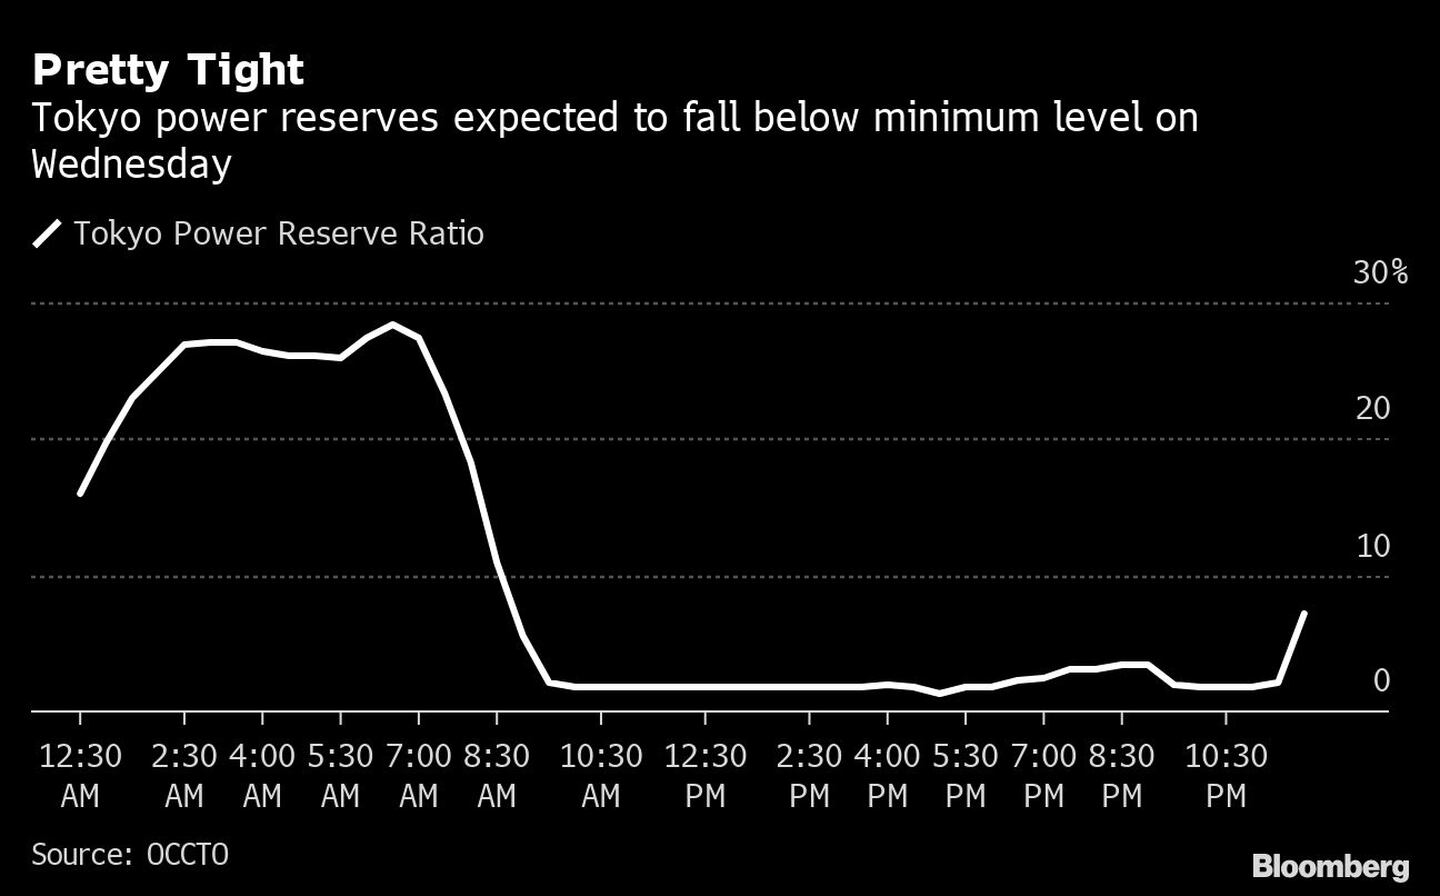 Se espera que las reservas energéticas de Tokio caigan por debajo del mínimo el miércolesdfd